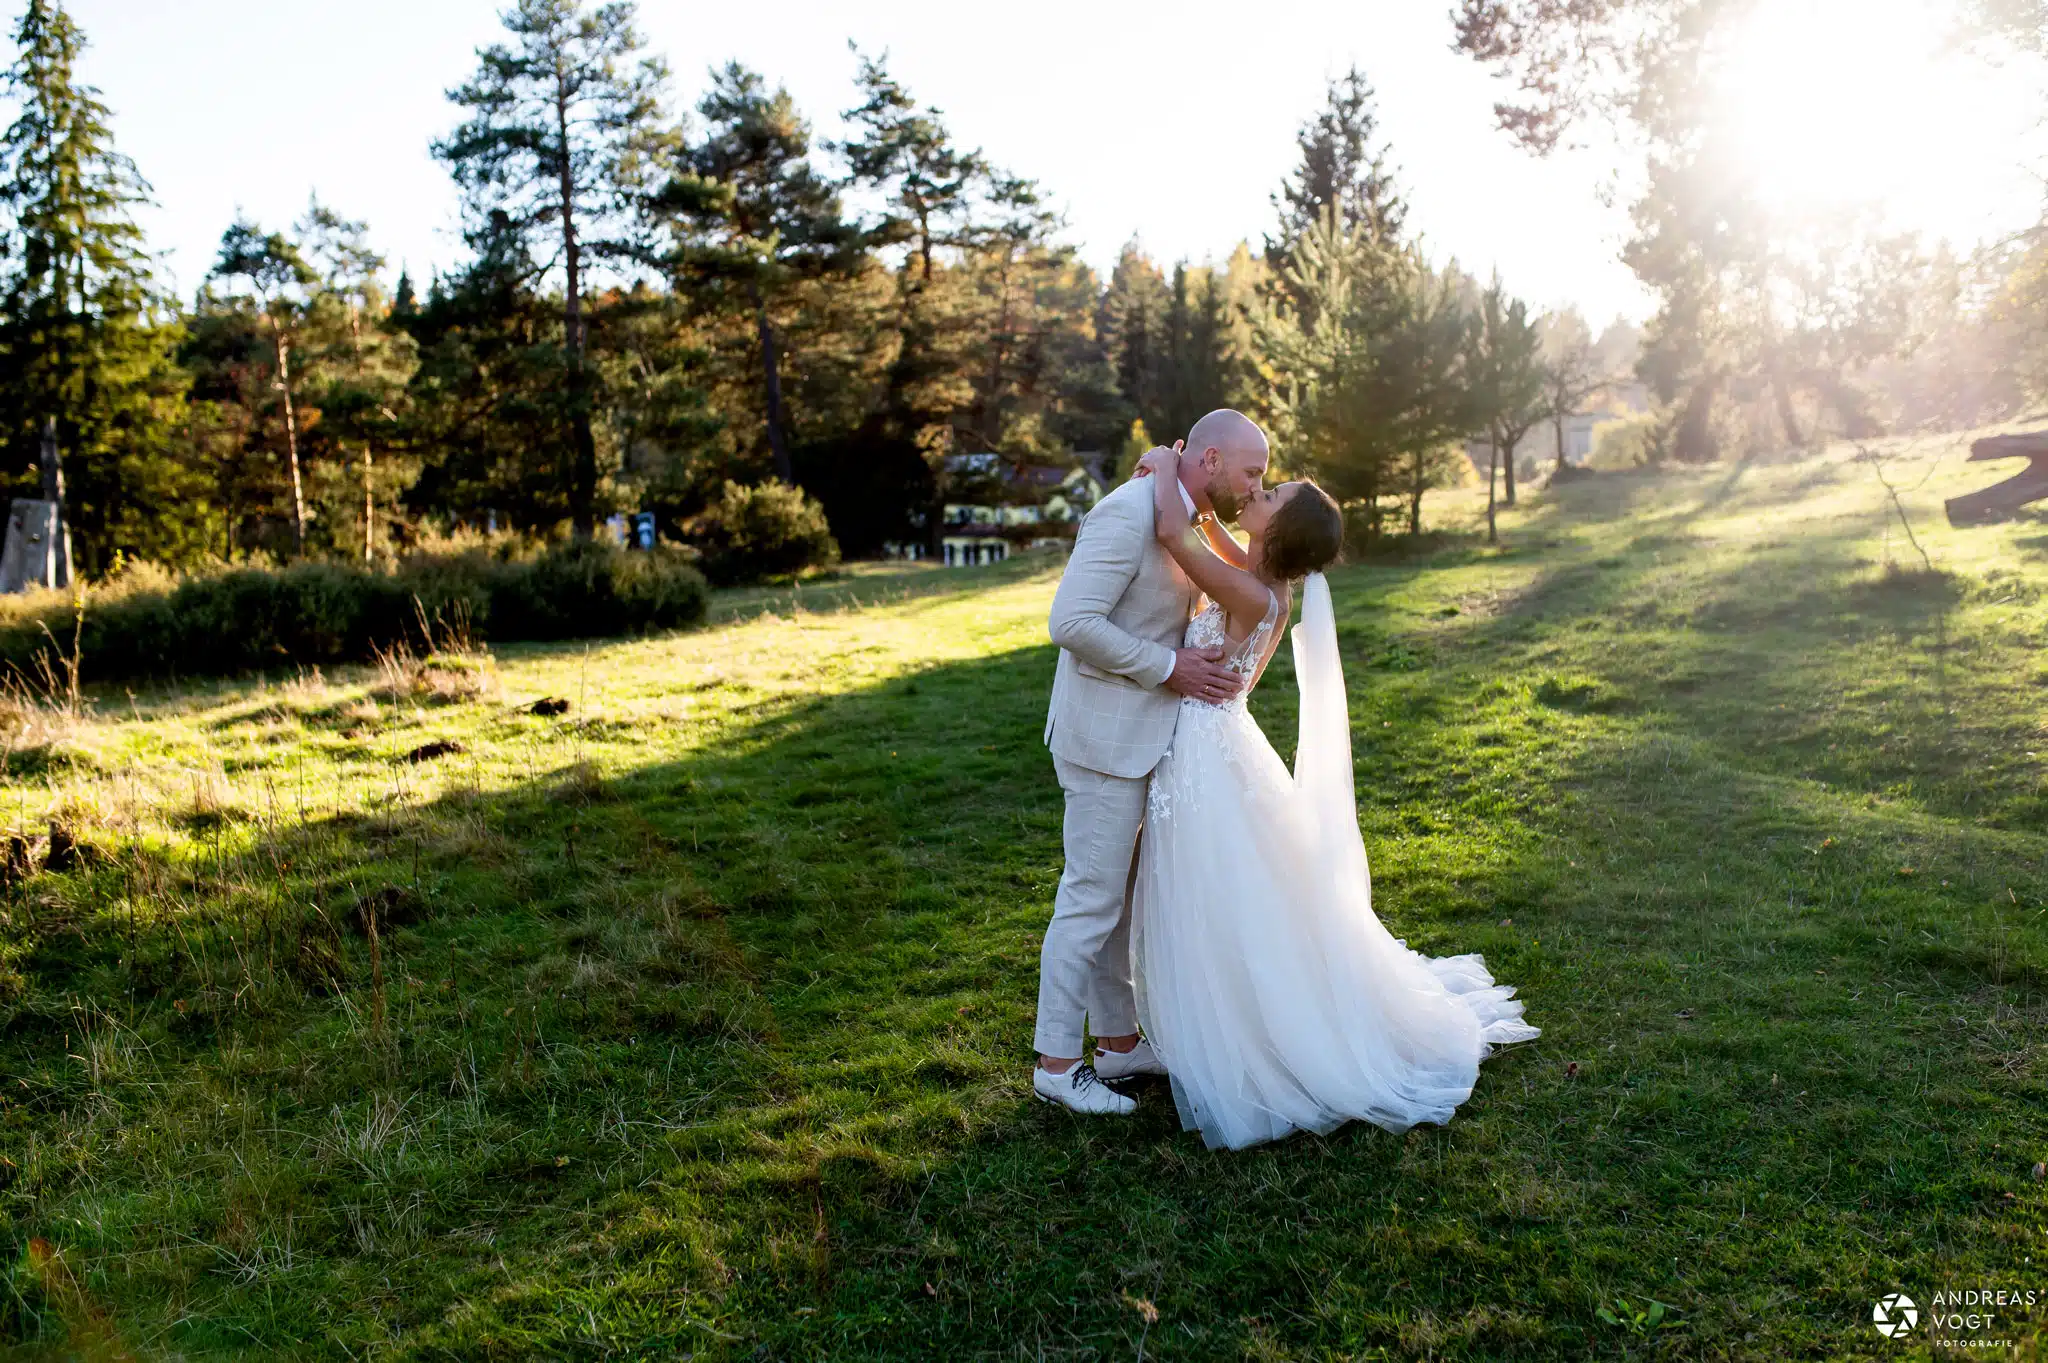 Hochzeitsfotograf Andreas Vogt aus Aalen - Fotograf für emotionale und natürliche Hochzeitsfotos